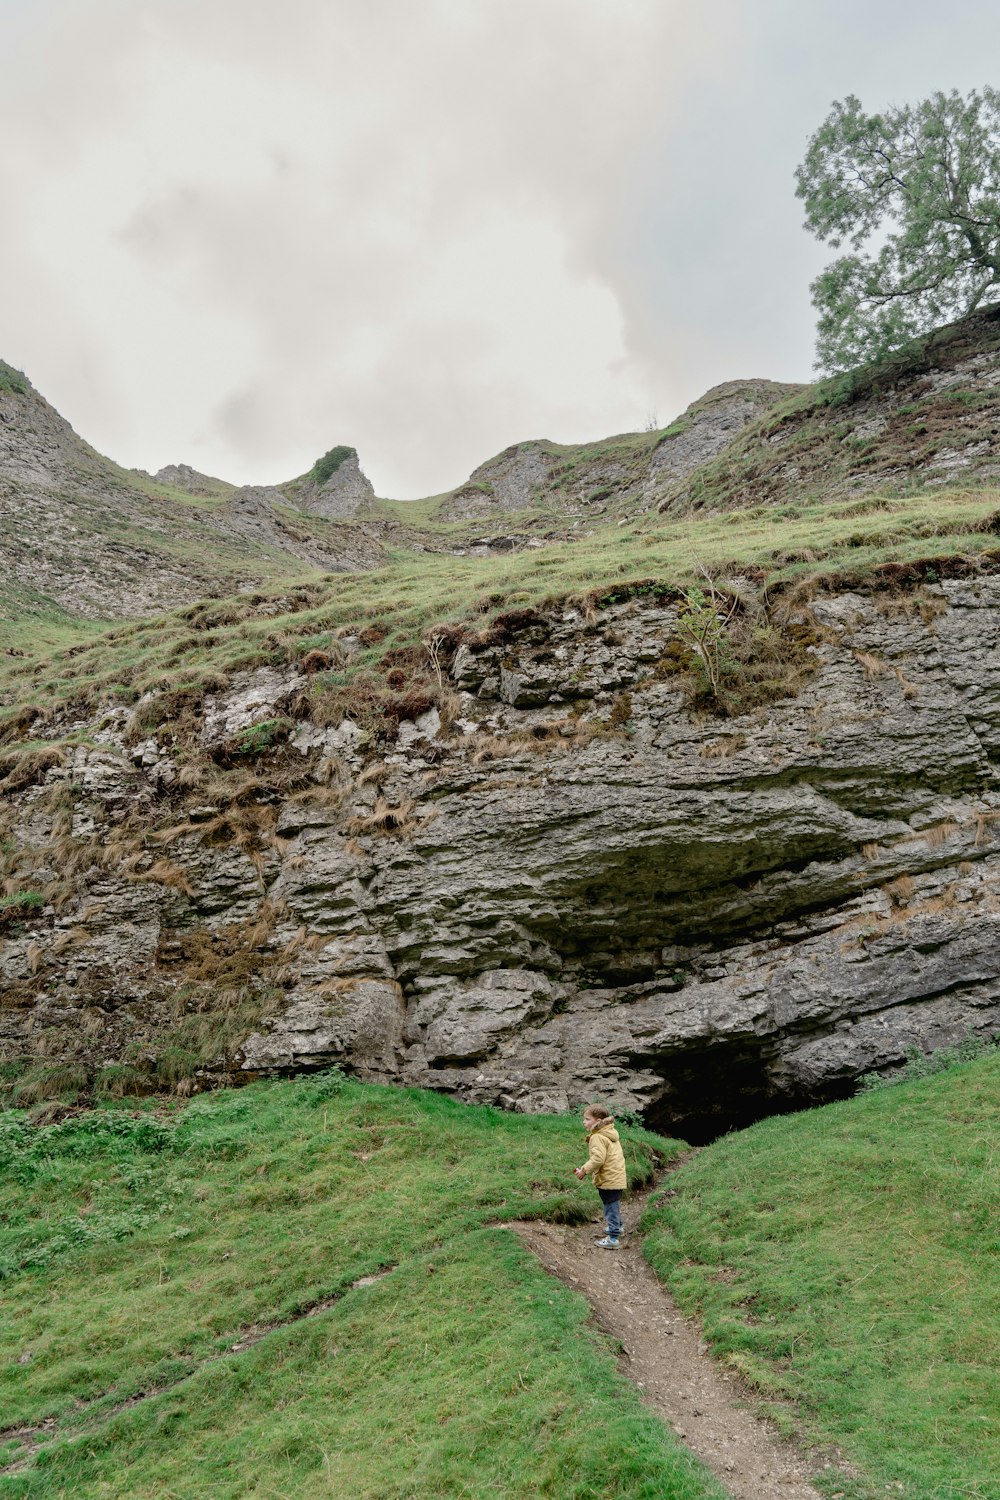 Una persona caminando por un sendero junto a un acantilado rocoso